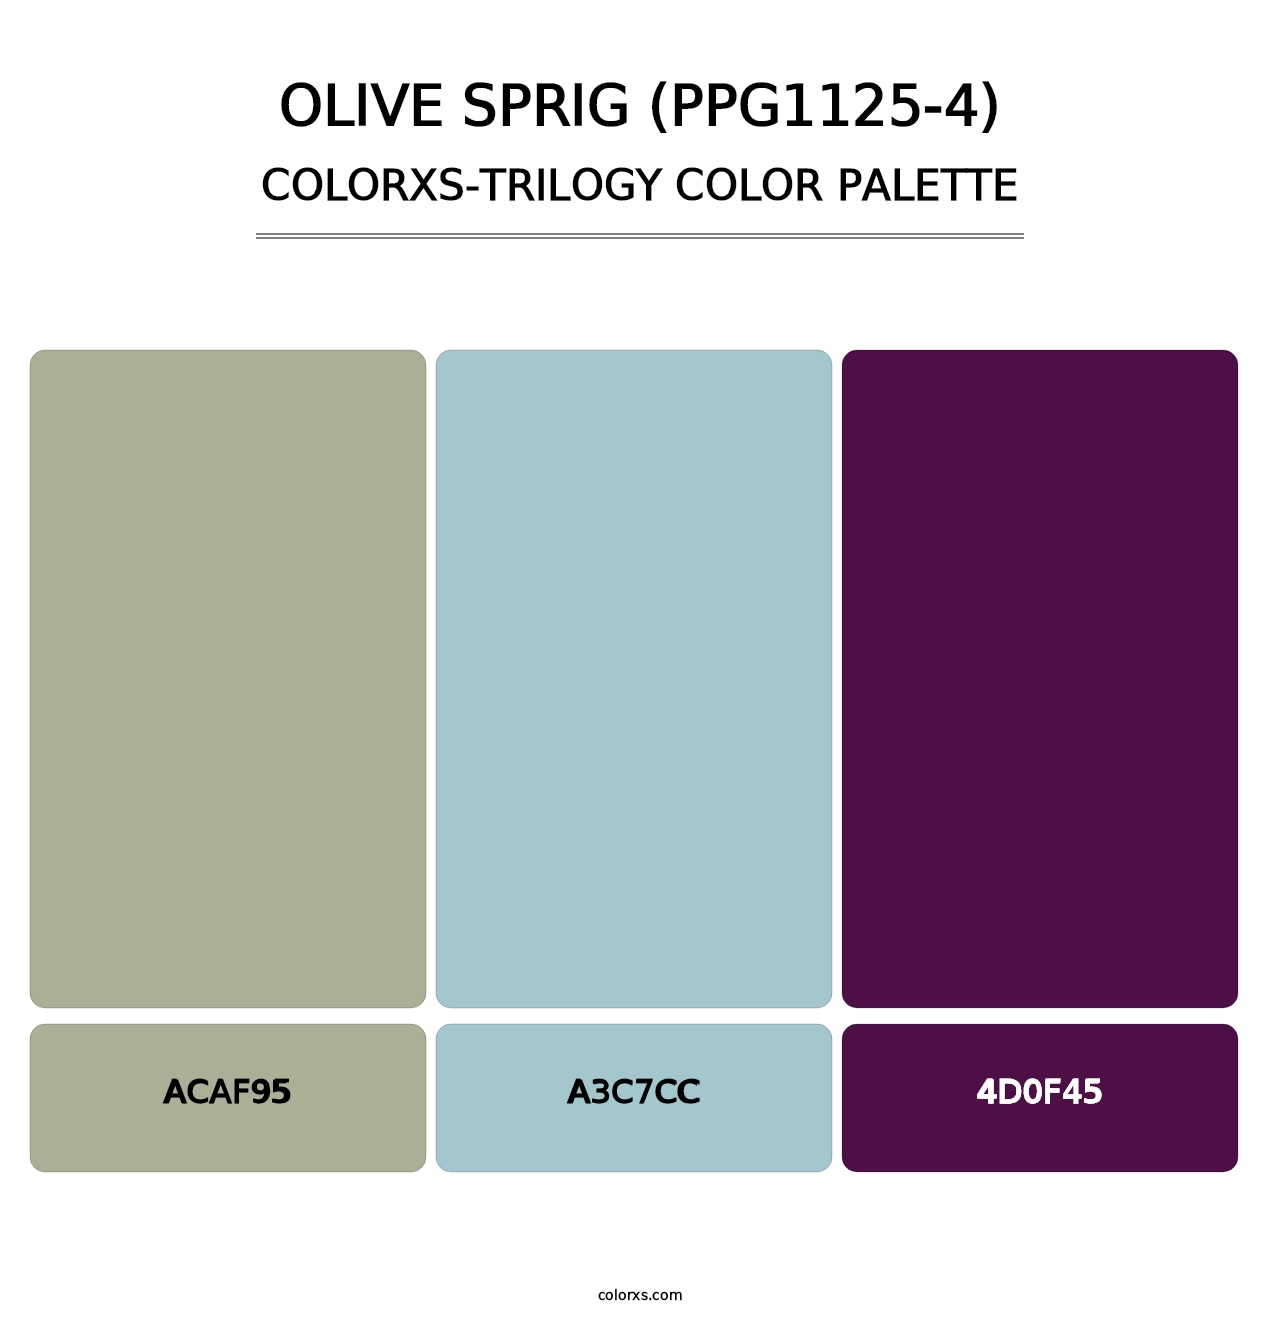 Olive Sprig (PPG1125-4) - Colorxs Trilogy Palette